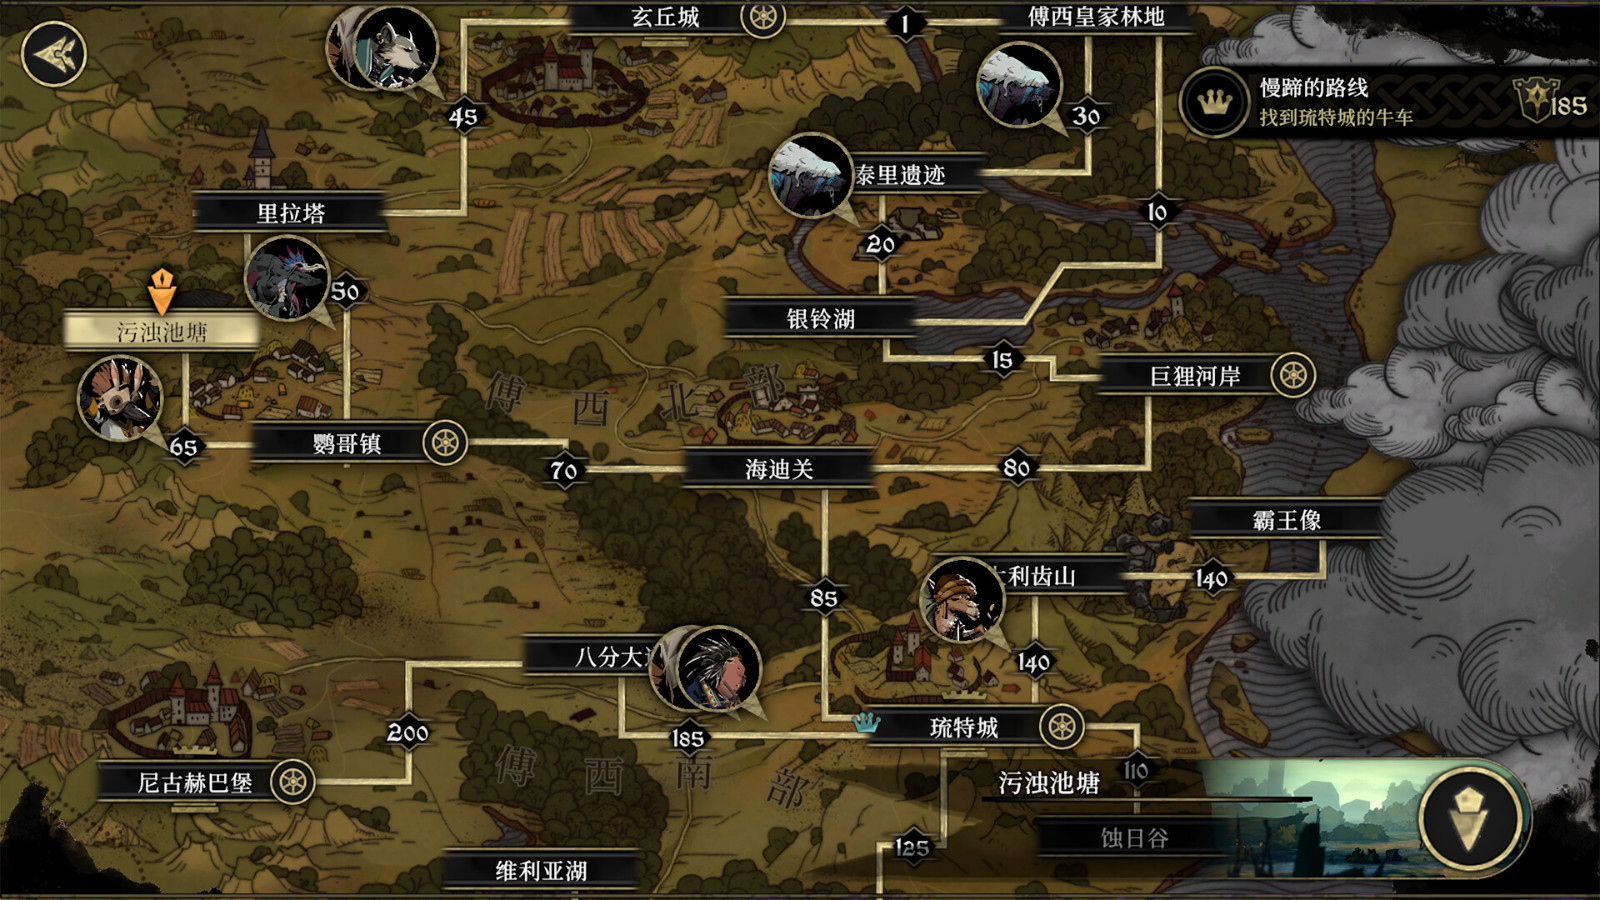 高难度动物拟人RPG游戏《安尼姆的无尽旅途》Steam页面上线 支持简体中文